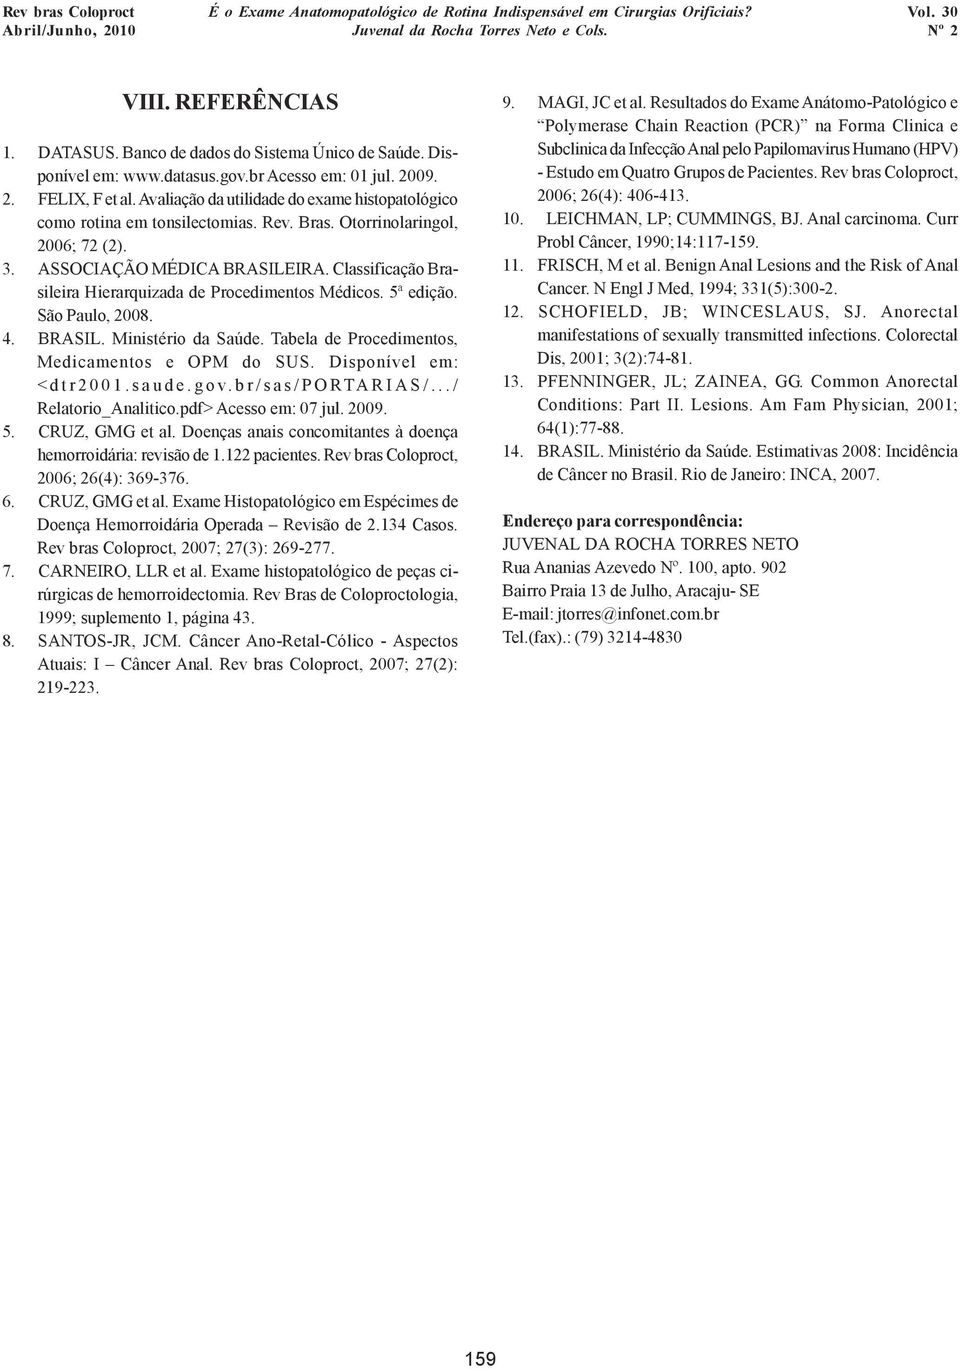 Classificação Brasileira Hierarquizada de Procedimentos Médicos. 5ª edição. São Paulo, 2008. 4. BRASIL. Ministério da Saúde. Tabela de Procedimentos, Medicamentos e OPM do SUS.